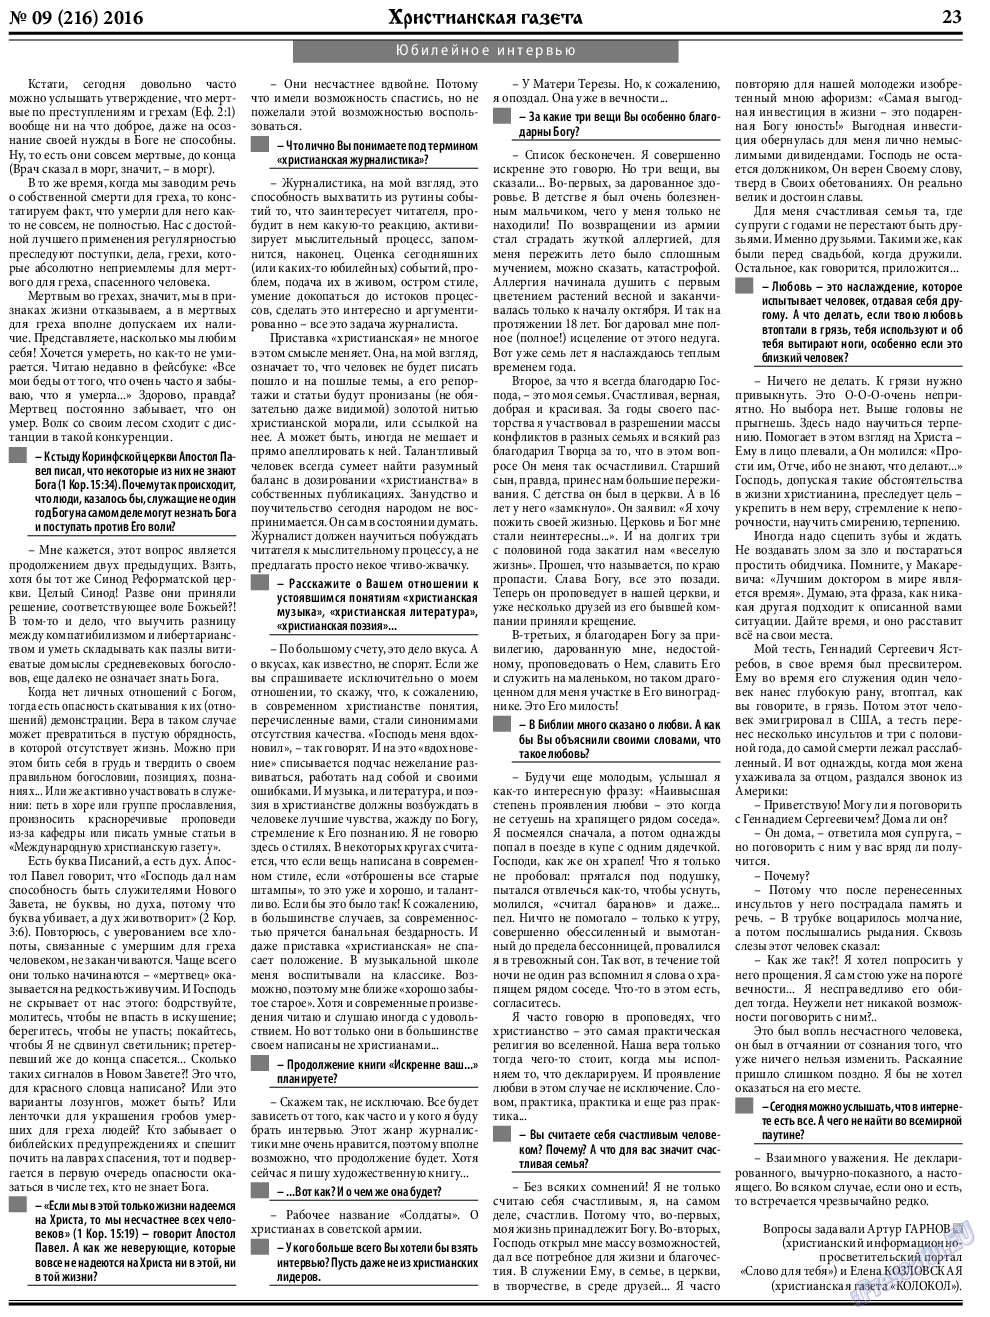 Христианская газета, газета. 2016 №9 стр.31